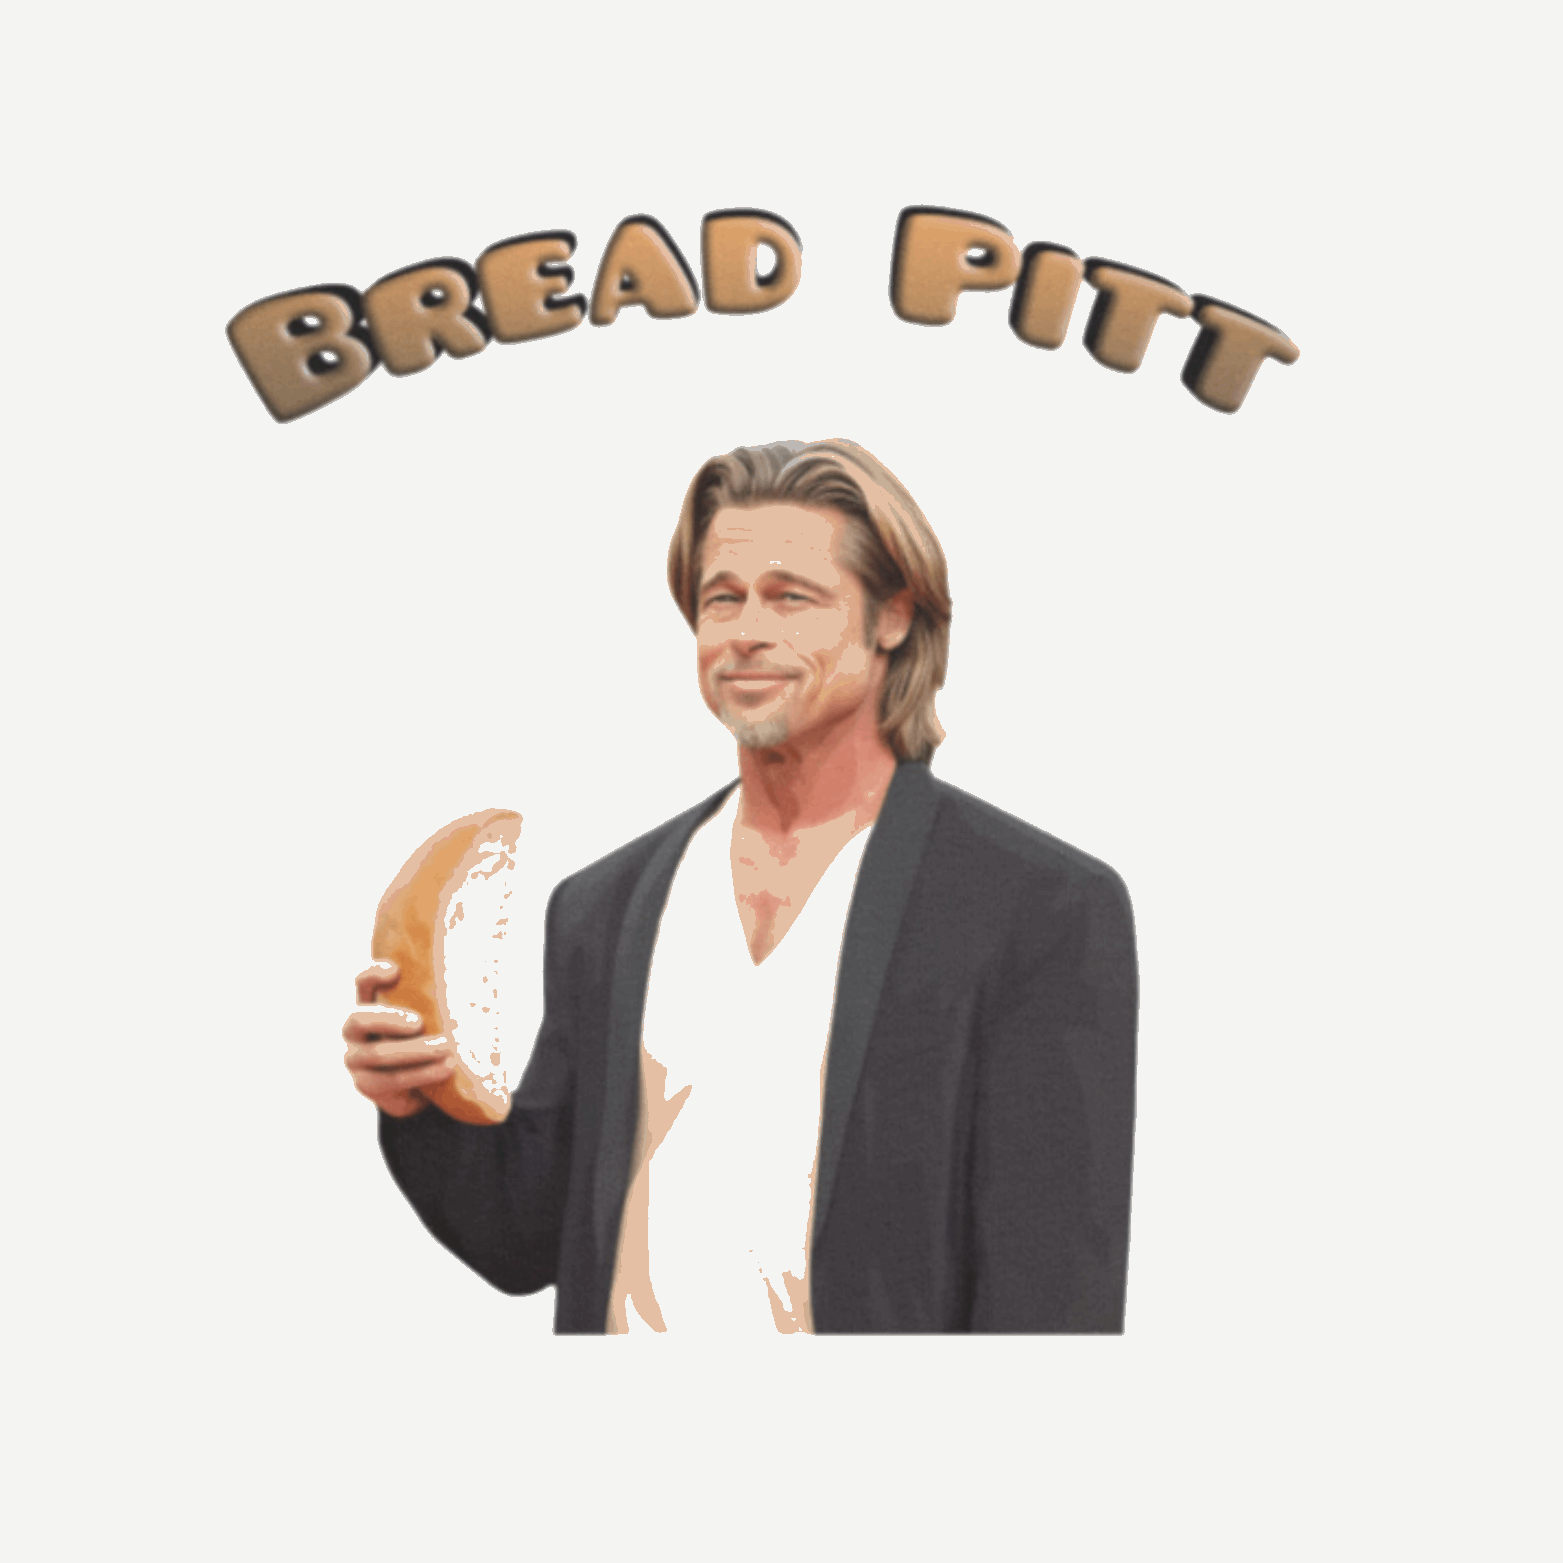 Monday Meme Tee, Bread Pitt